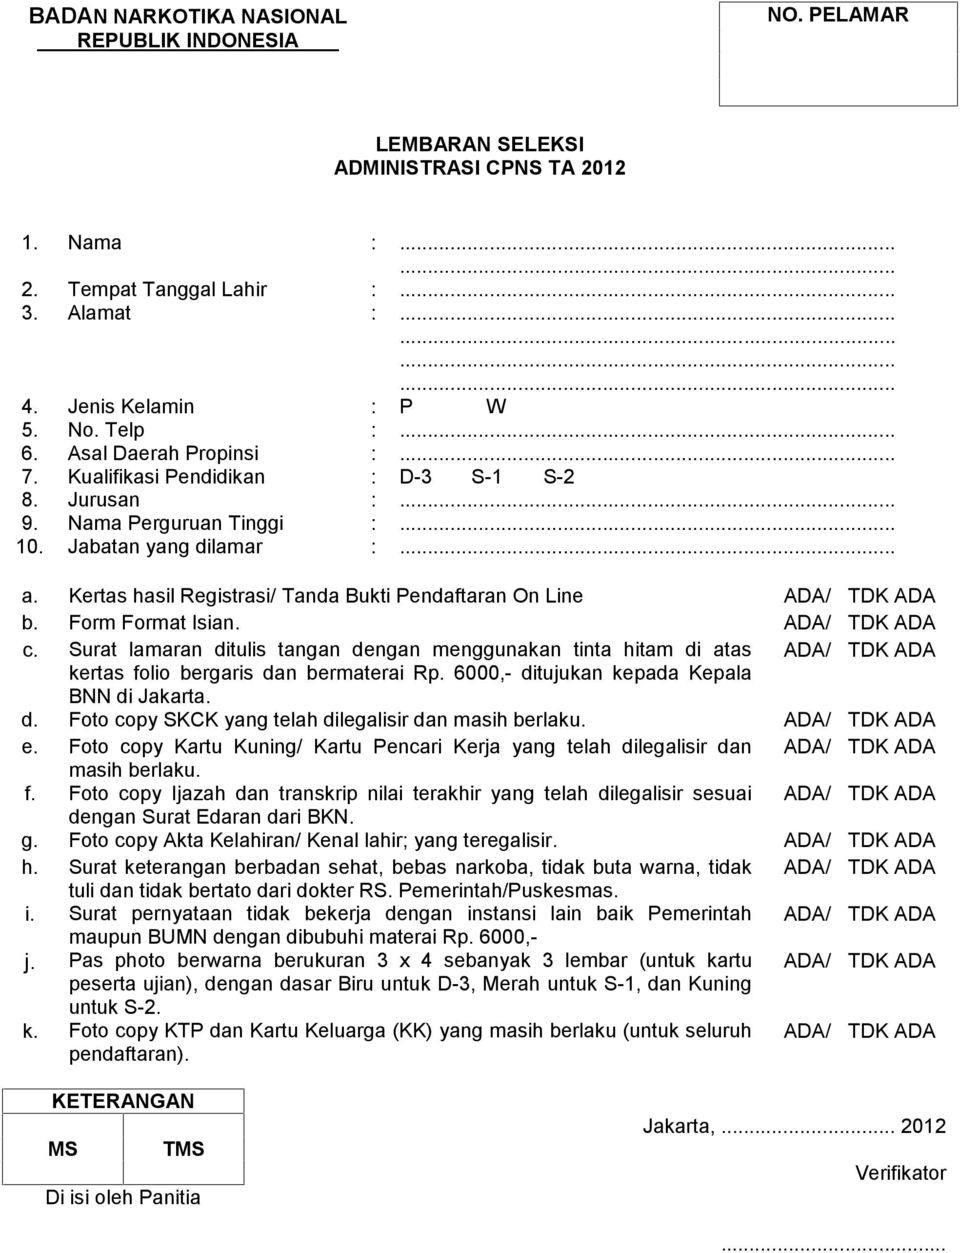 Kertas hasil Registrasi/ Tanda Bukti Pendaftaran On Line ADA/ TDK ADA b. Form Format Isian. ADA/ TDK ADA c.